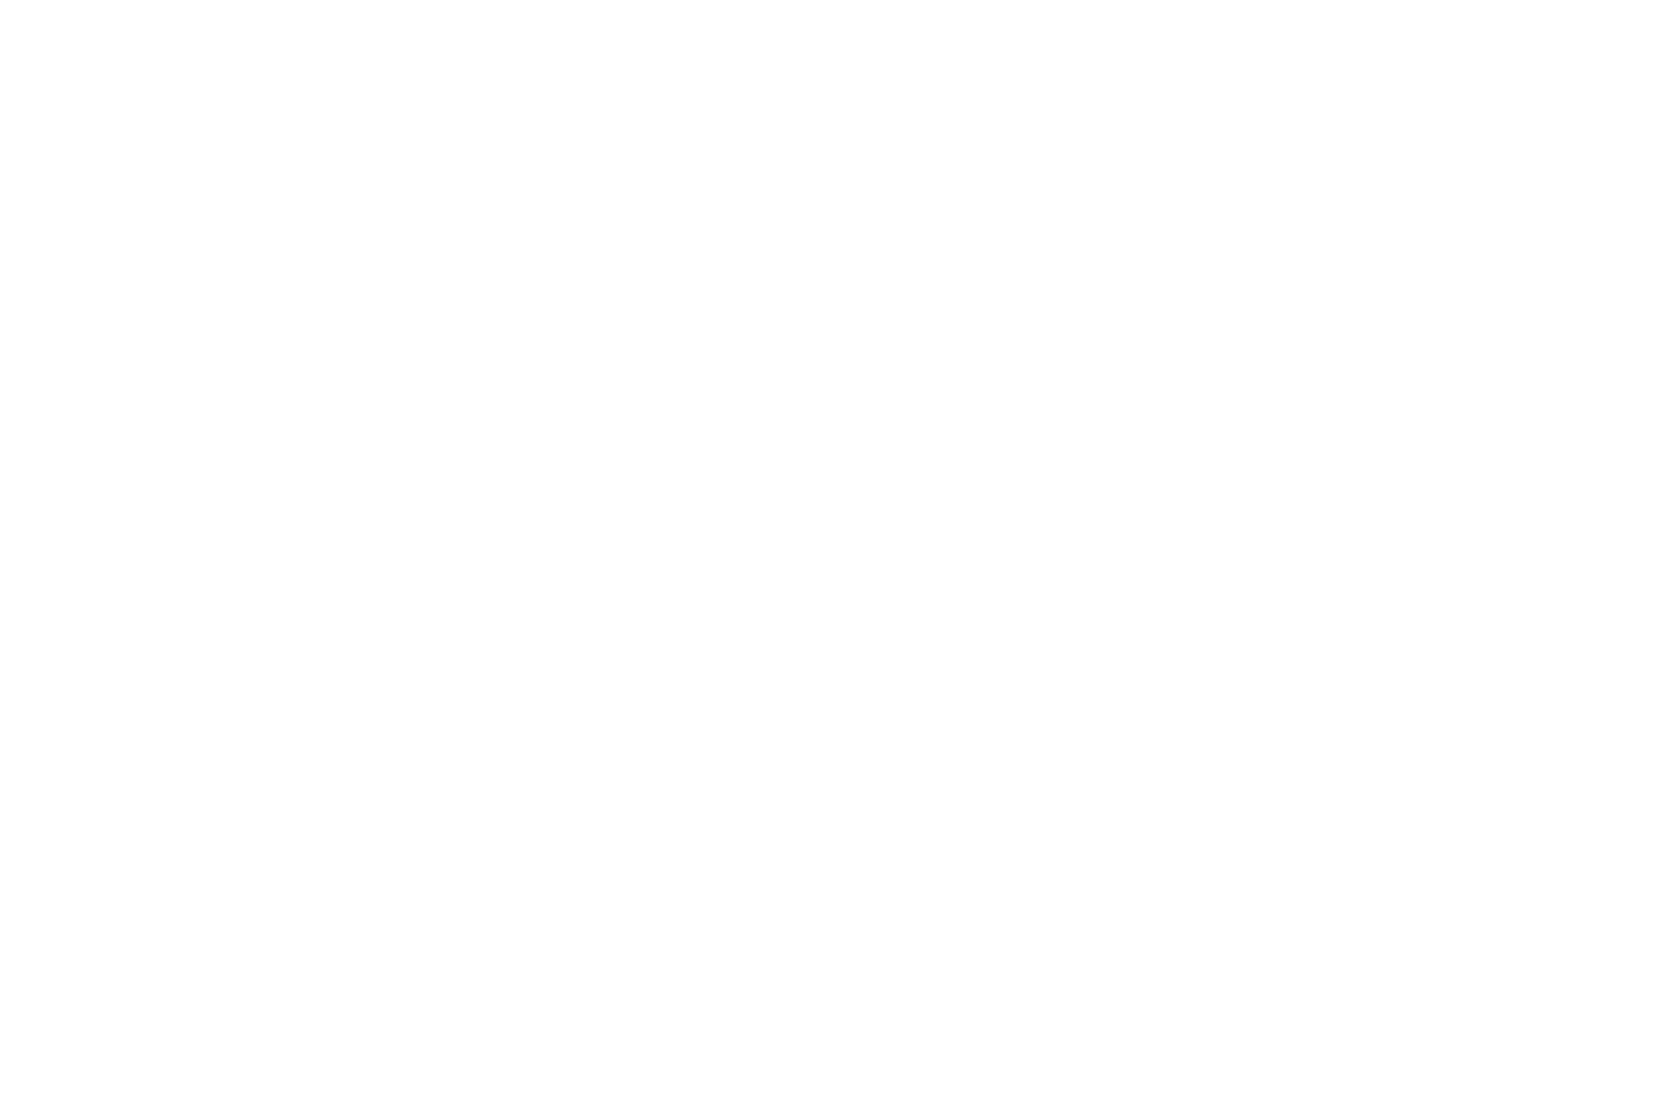 Пример логотипа, разработанного для консалтинговой компании для портфолио веб дизайнера